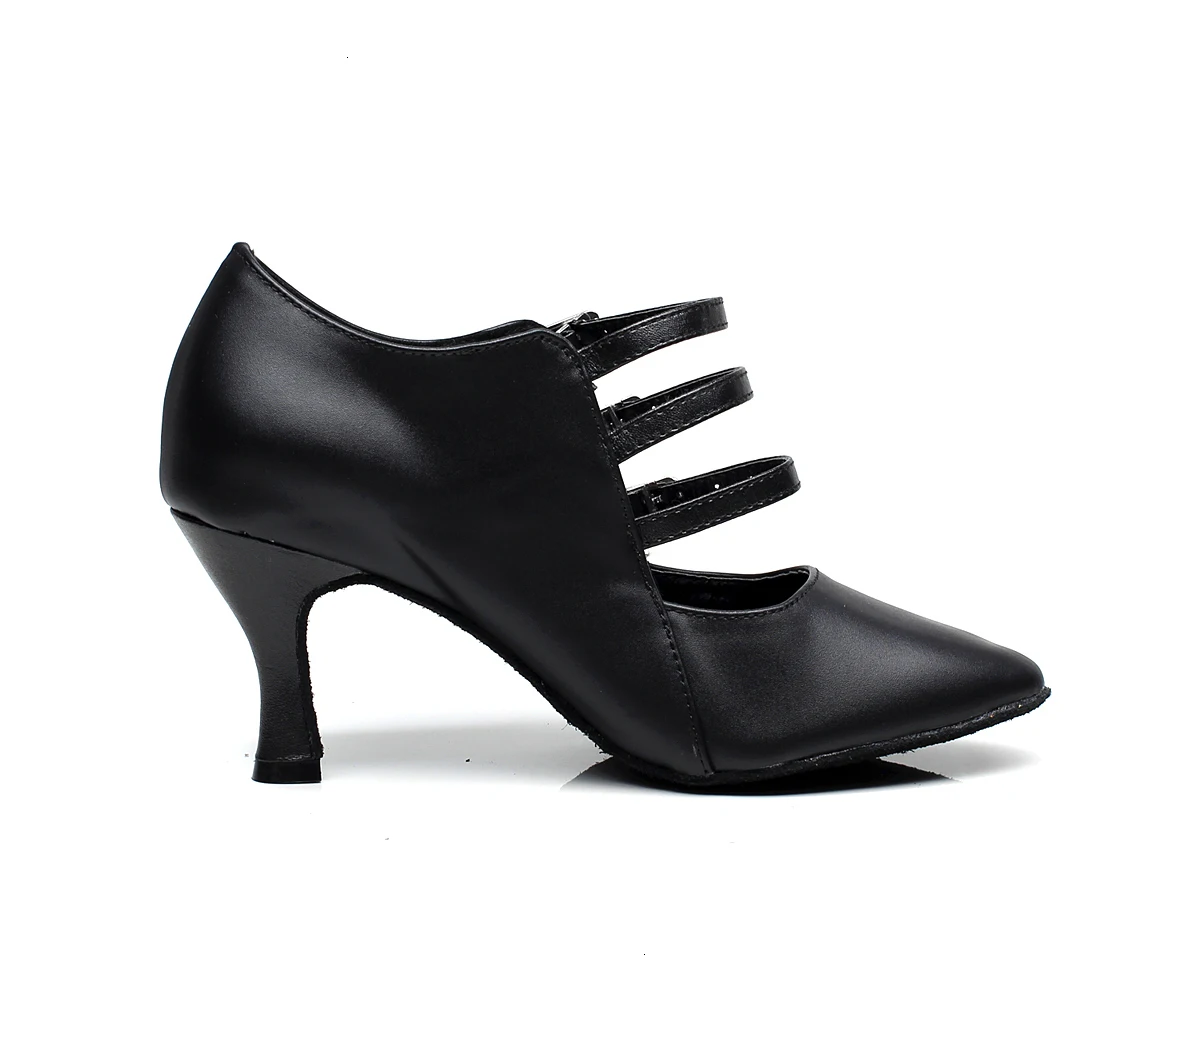 Обувь для занятий сальсой на квадратном каблуке; обувь для танго и танцев для женщин; скидки; распродажа; женские туфли-лодочки на высоком каблуке 7,5 см В чешском стиле